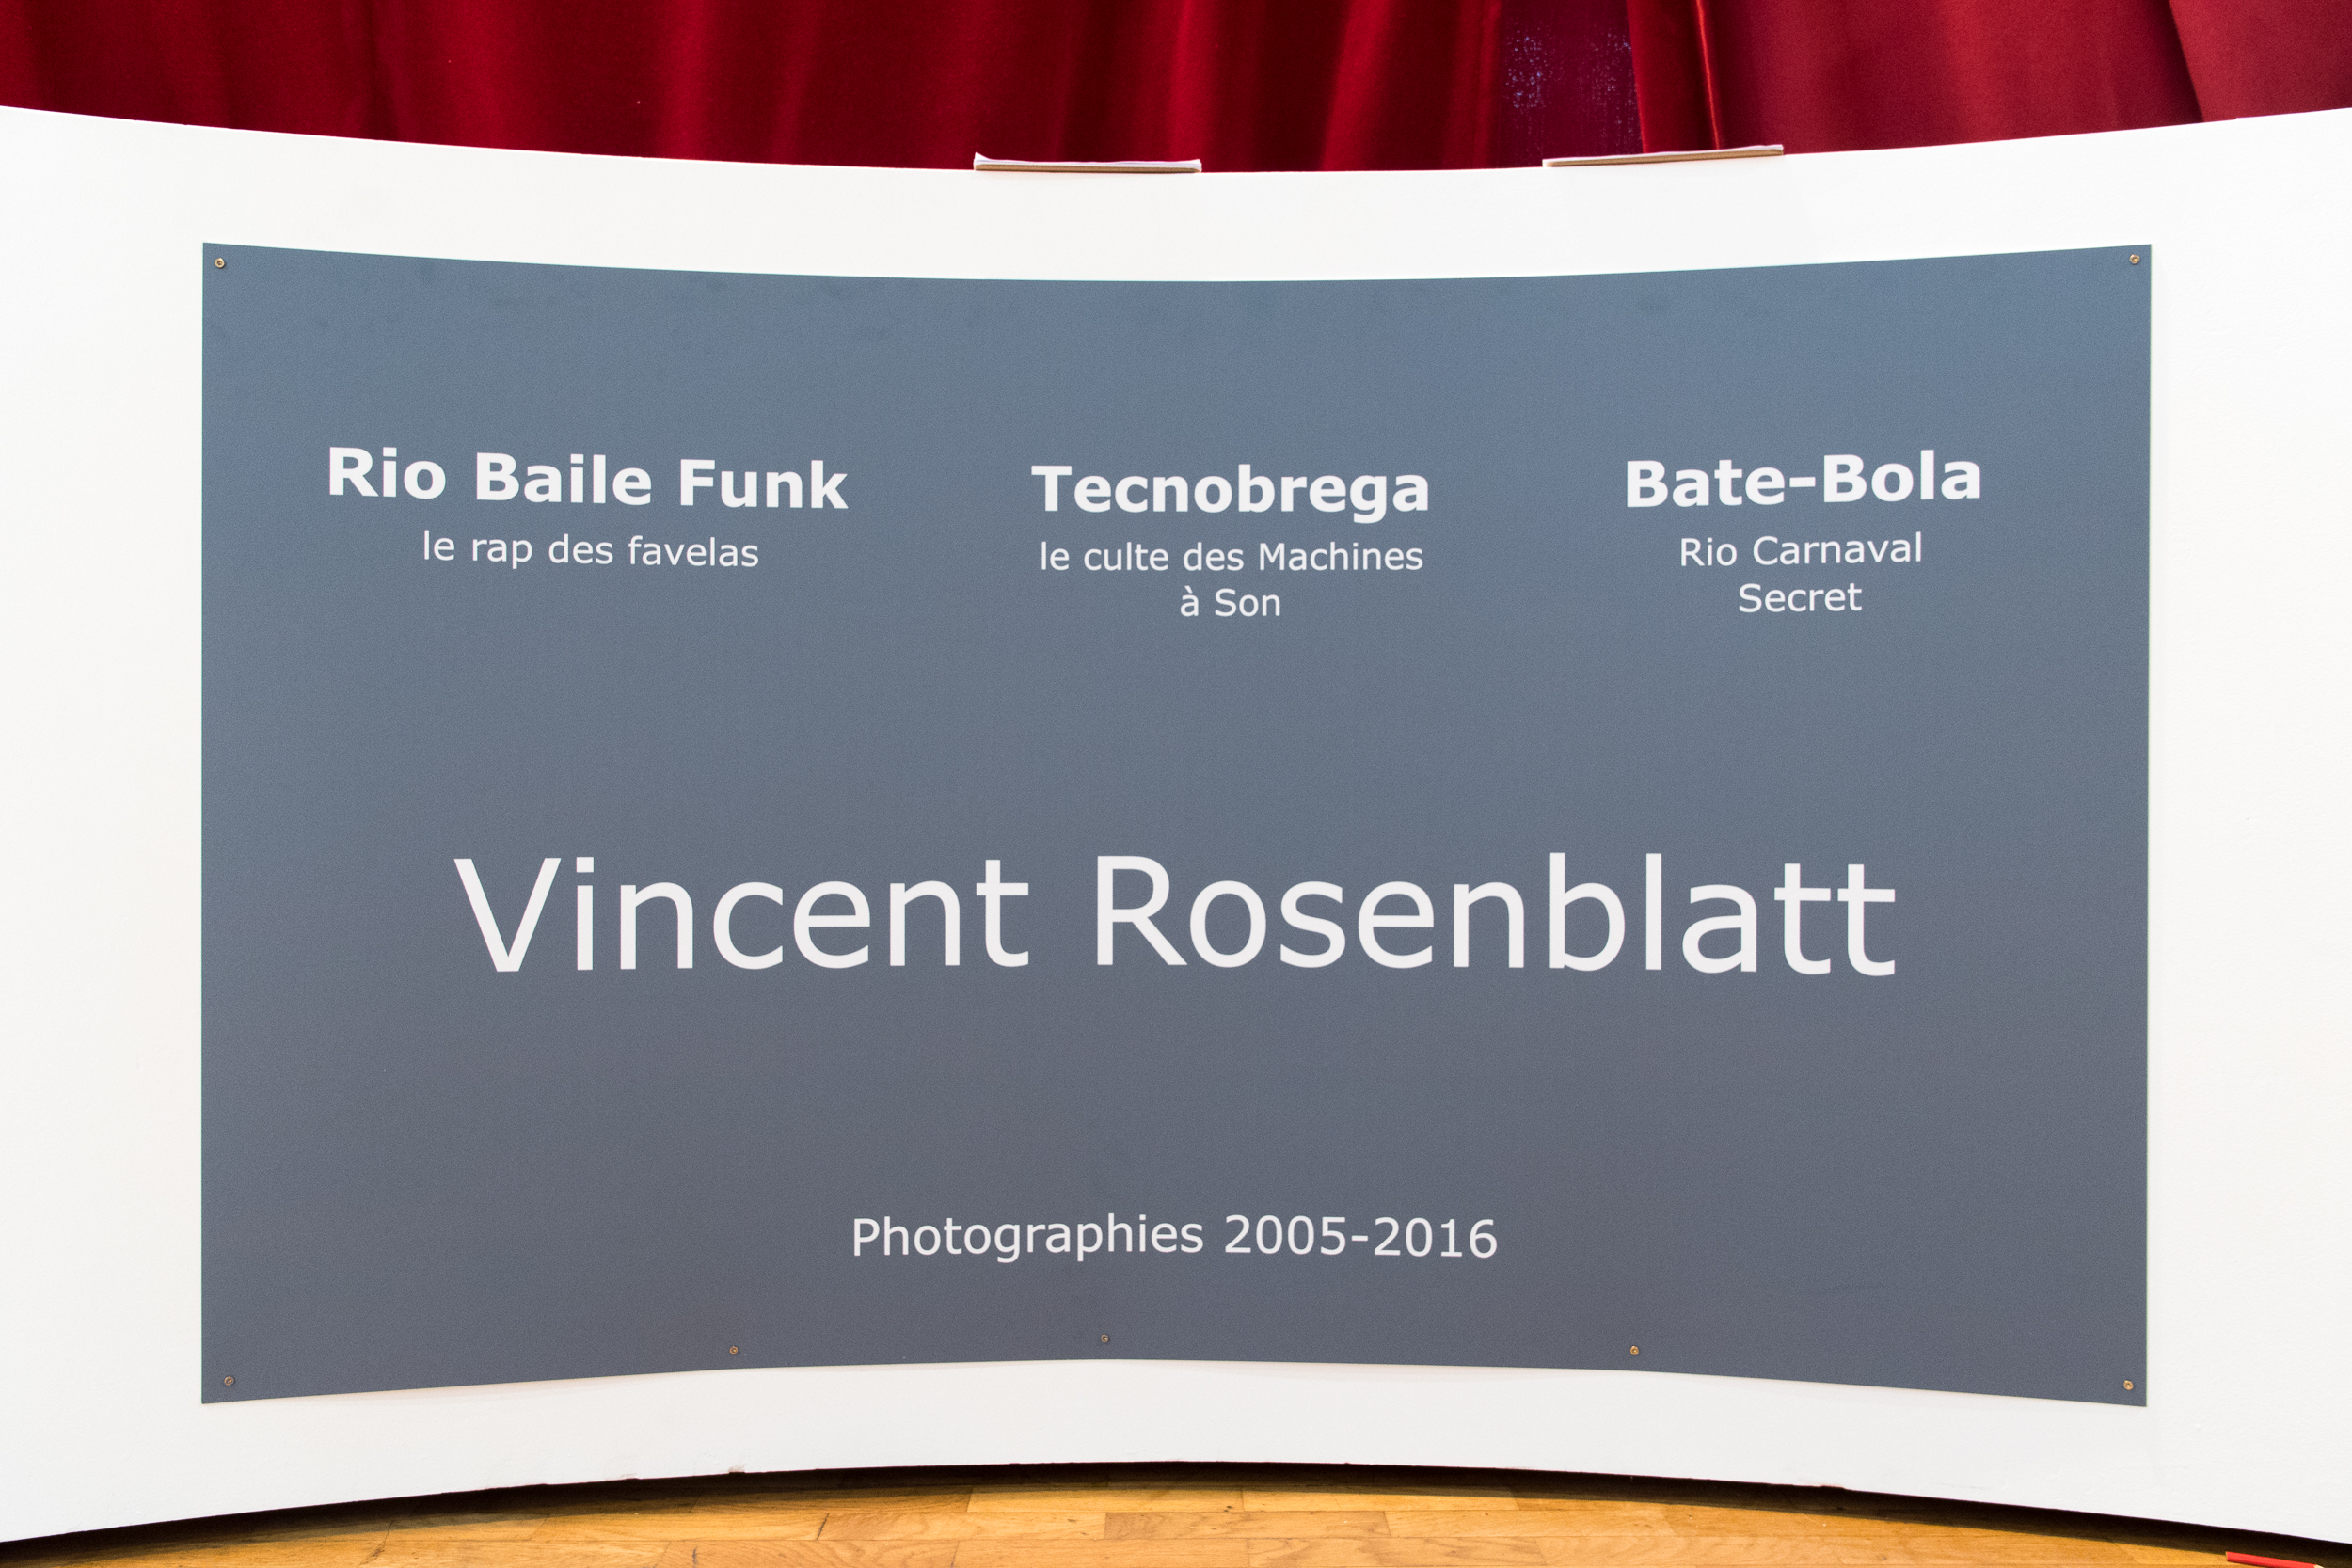  Exposition Vincent Rosenblatt à l'Espace Michel Simon - 19 au 26 Novembre 2016 à Noisy-le-Grand 